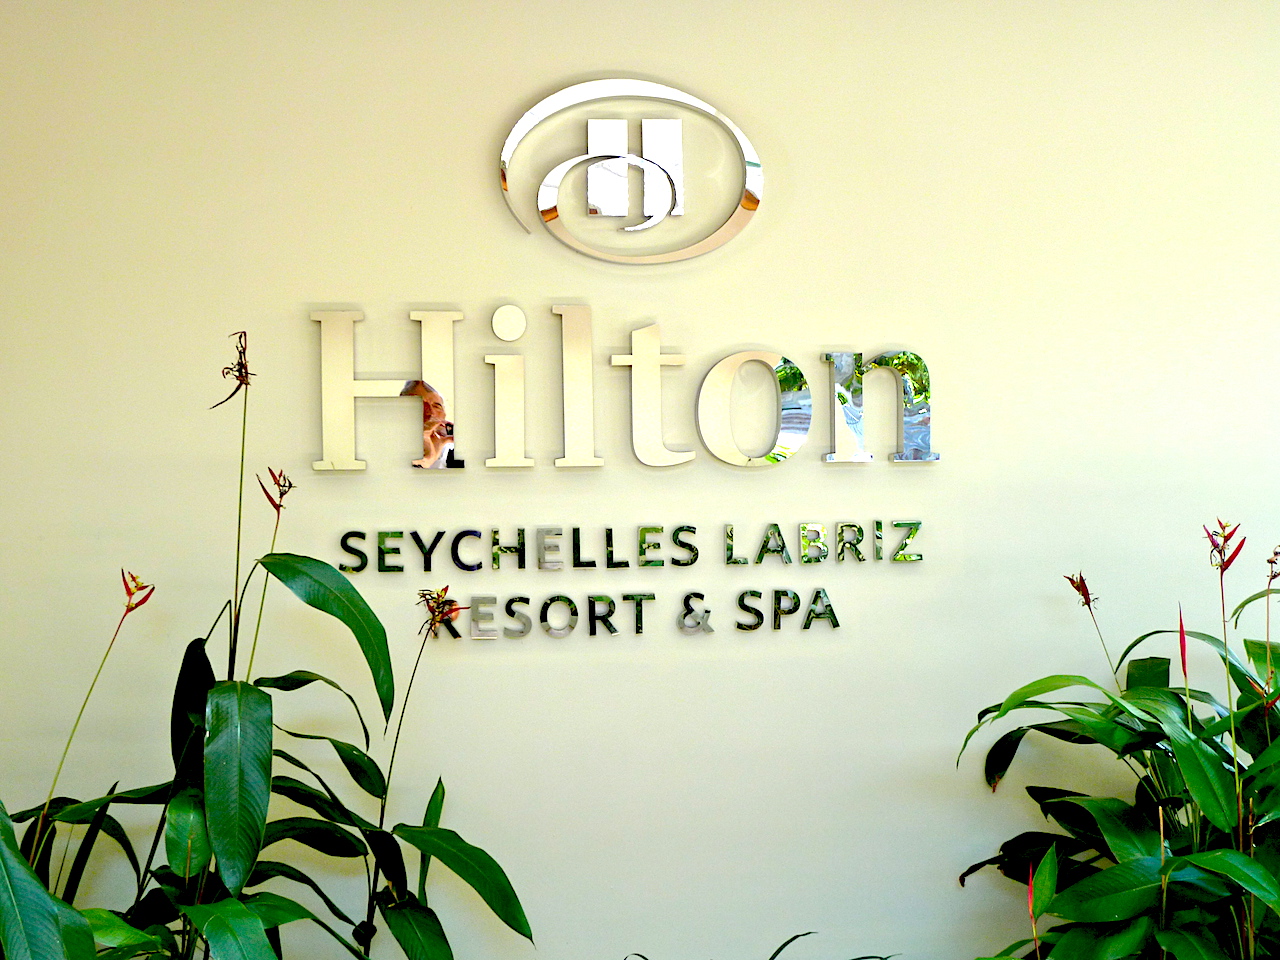 Hilton Labriz Resort and Spa